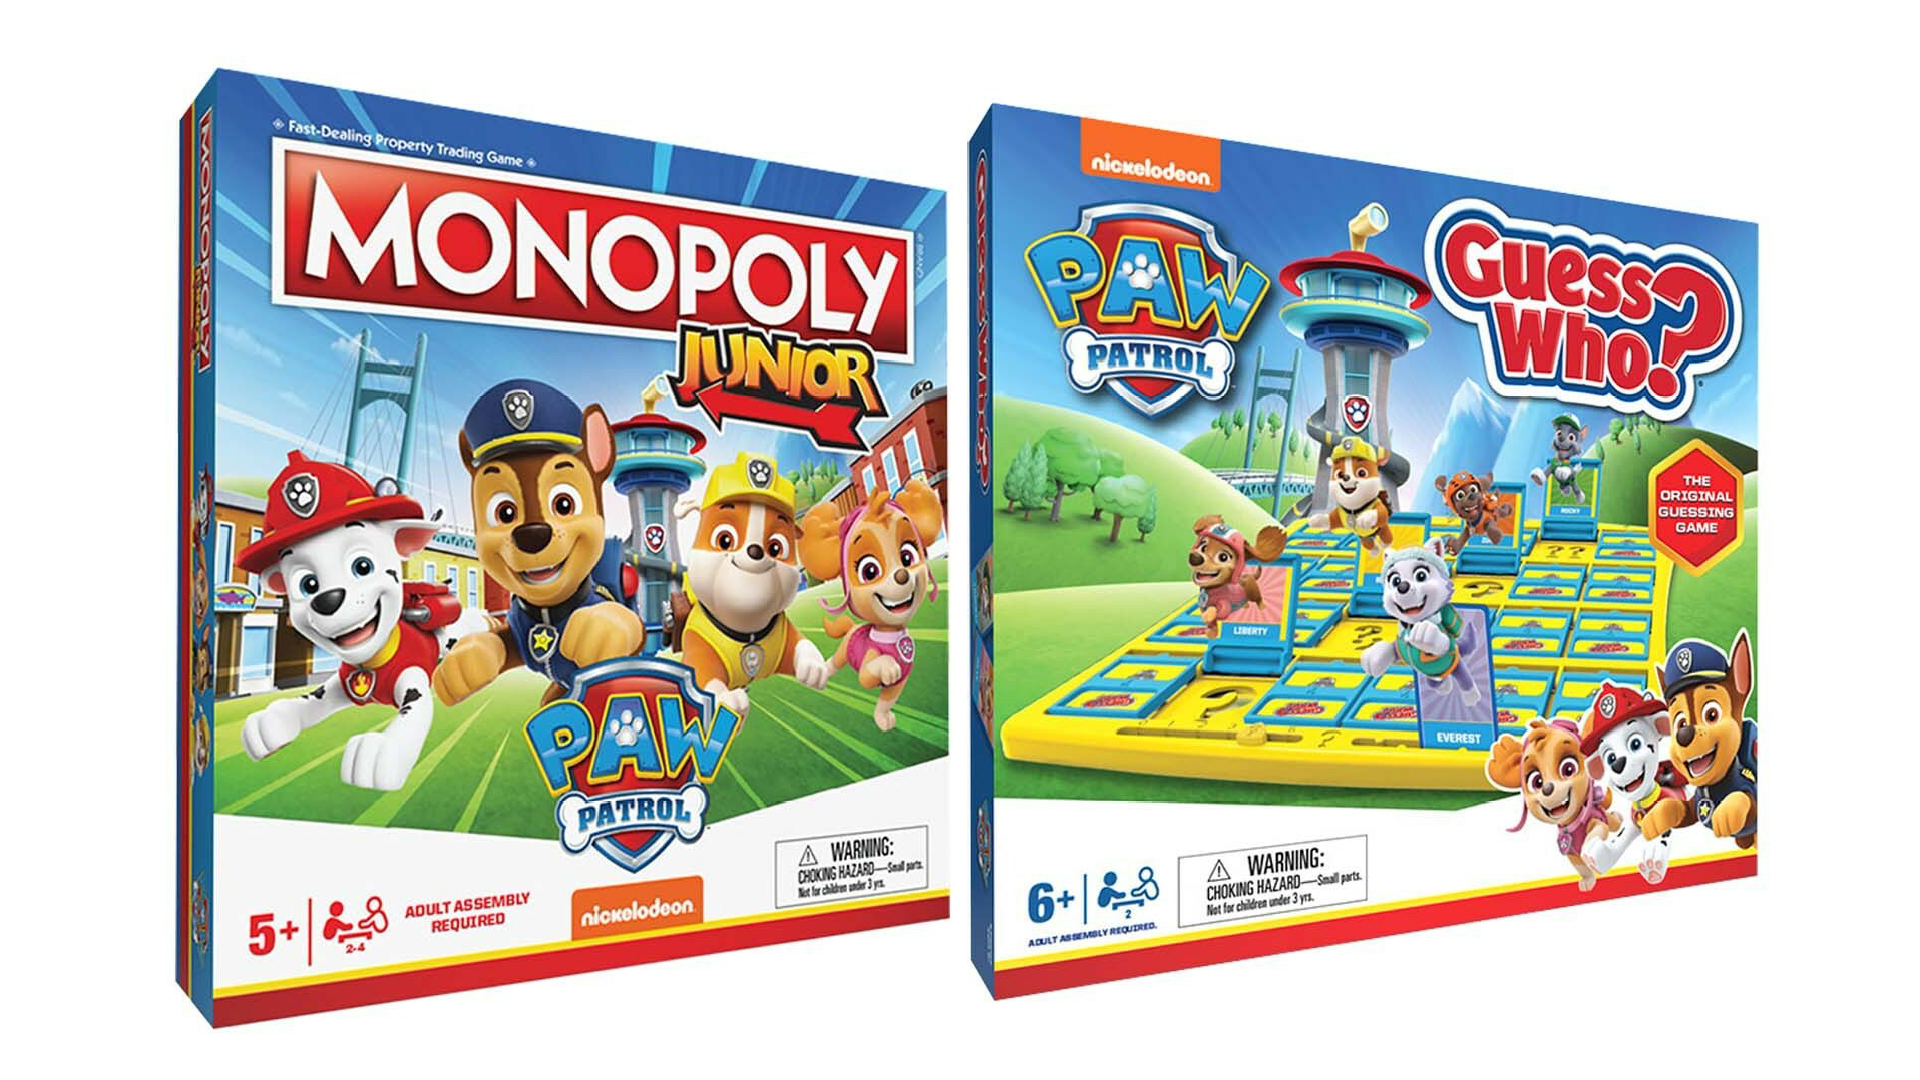 Monopoly Peanuts - Monopoly Kids